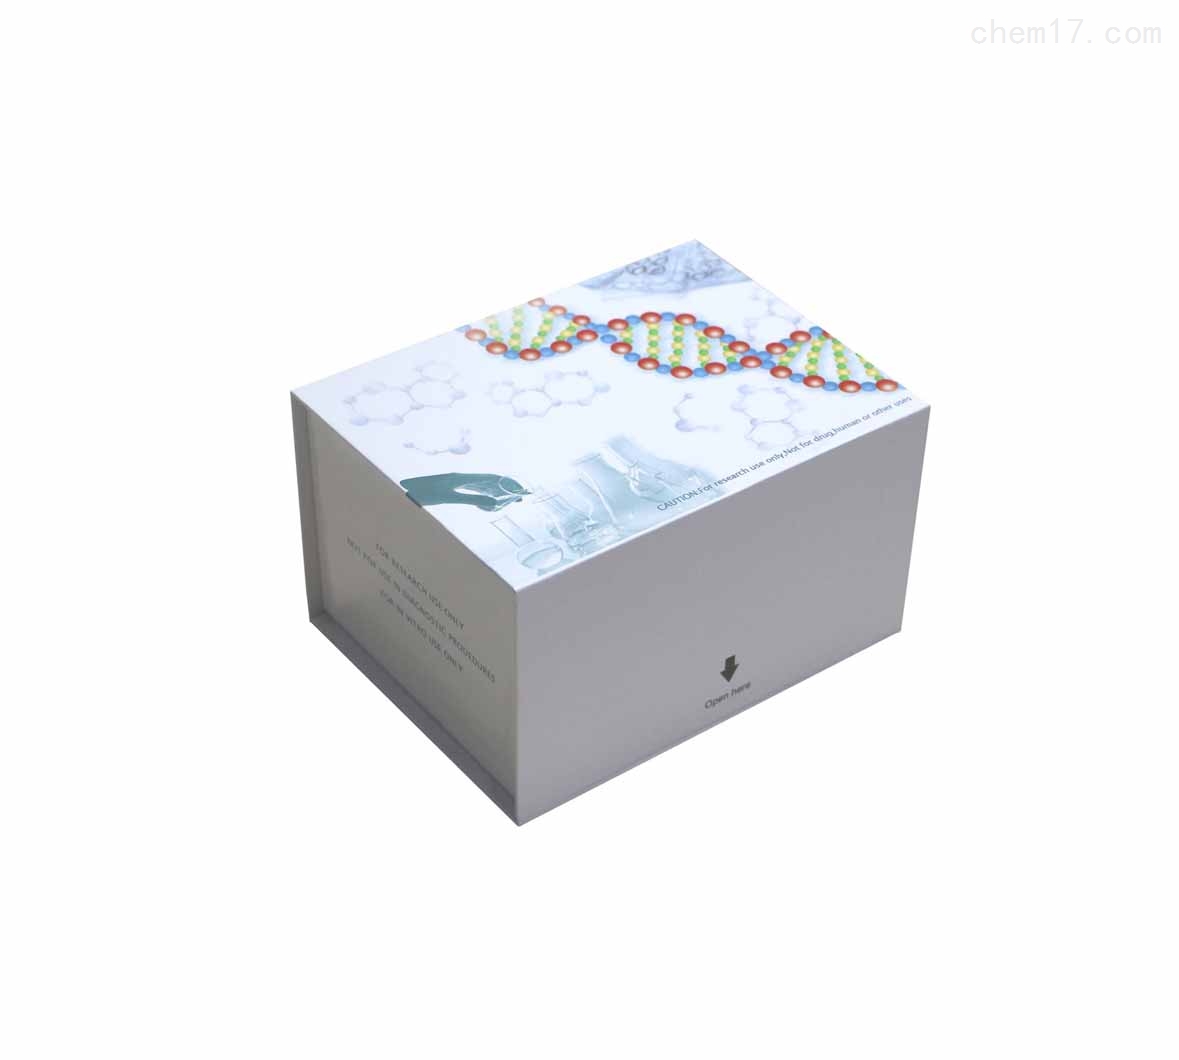 人氧化低密度脂蛋白(OxLDL)ELISA试剂盒